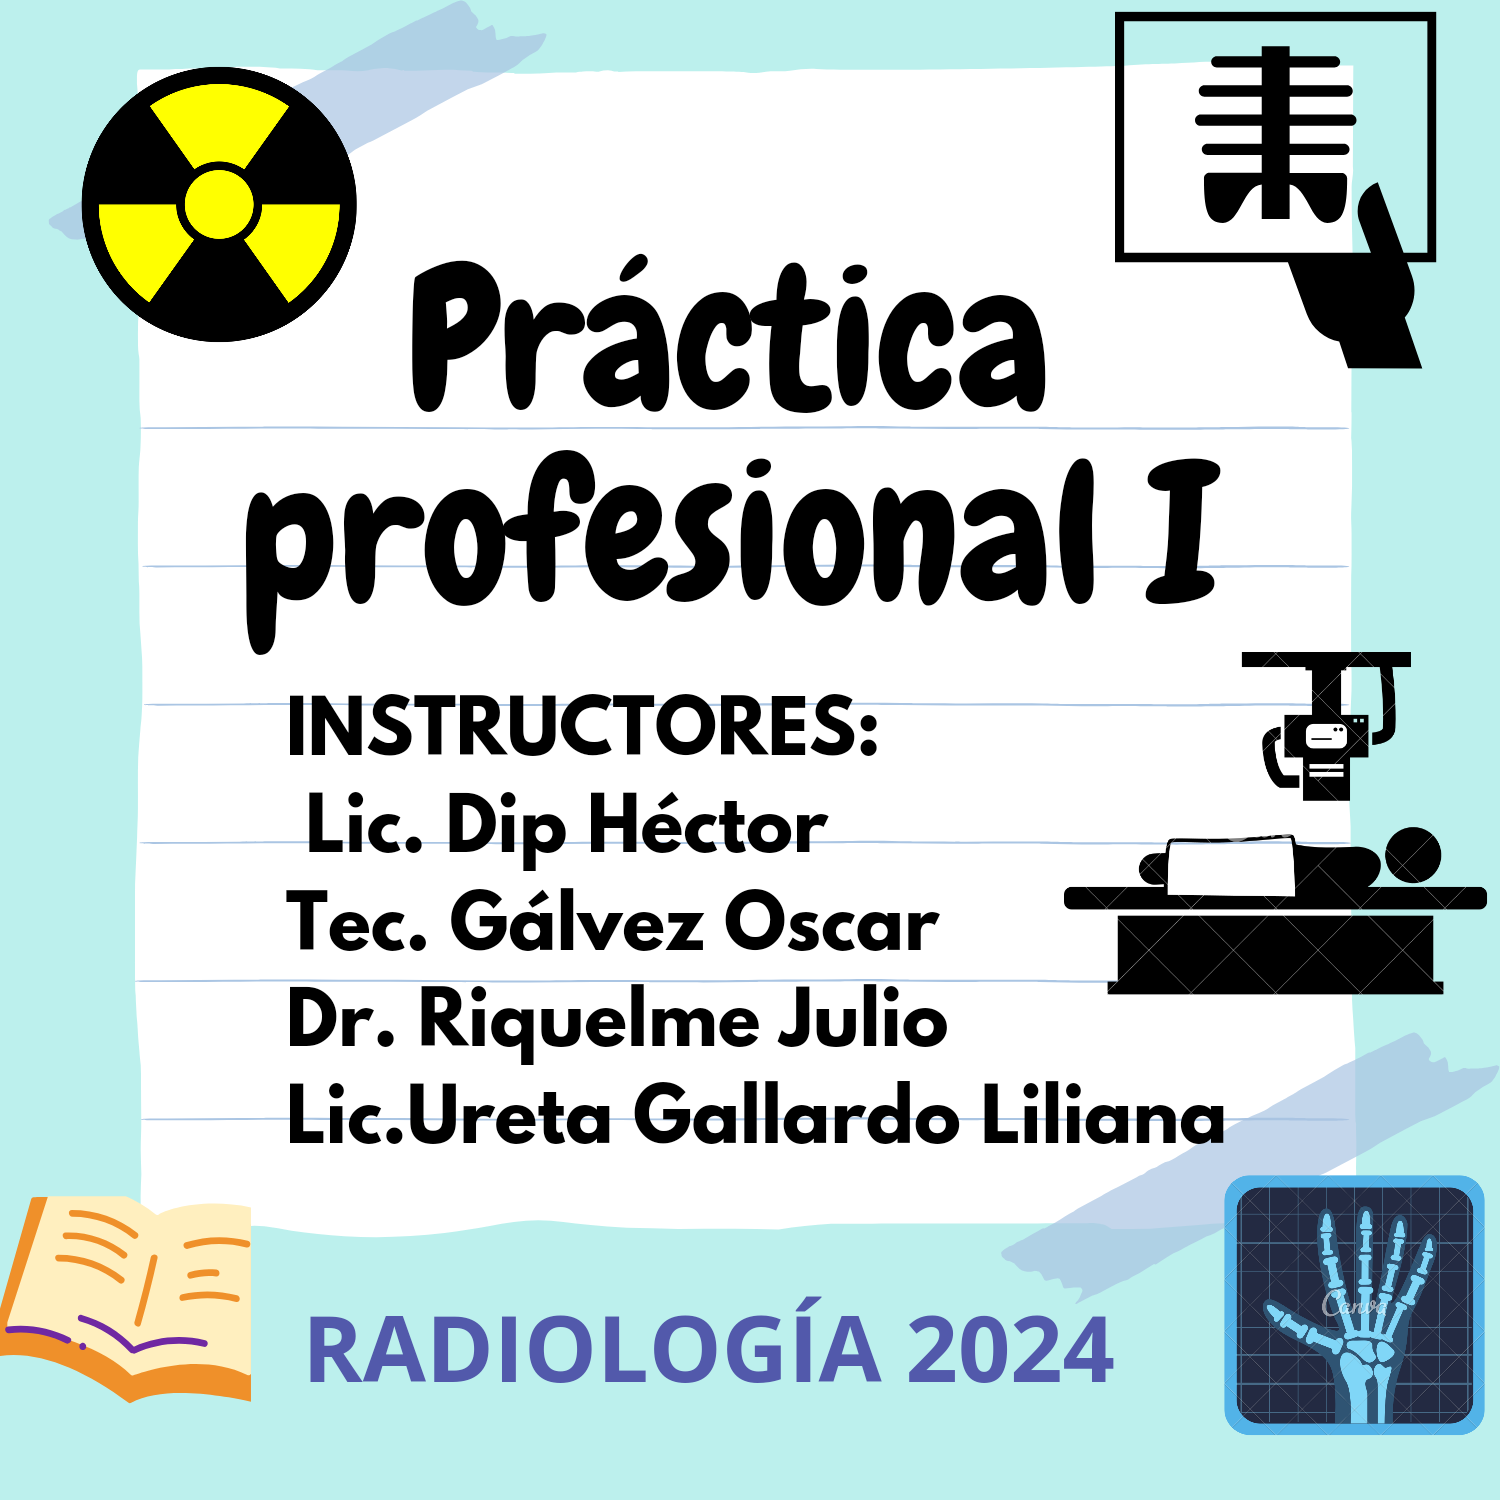 Práctica Profesional I Radiología 2024